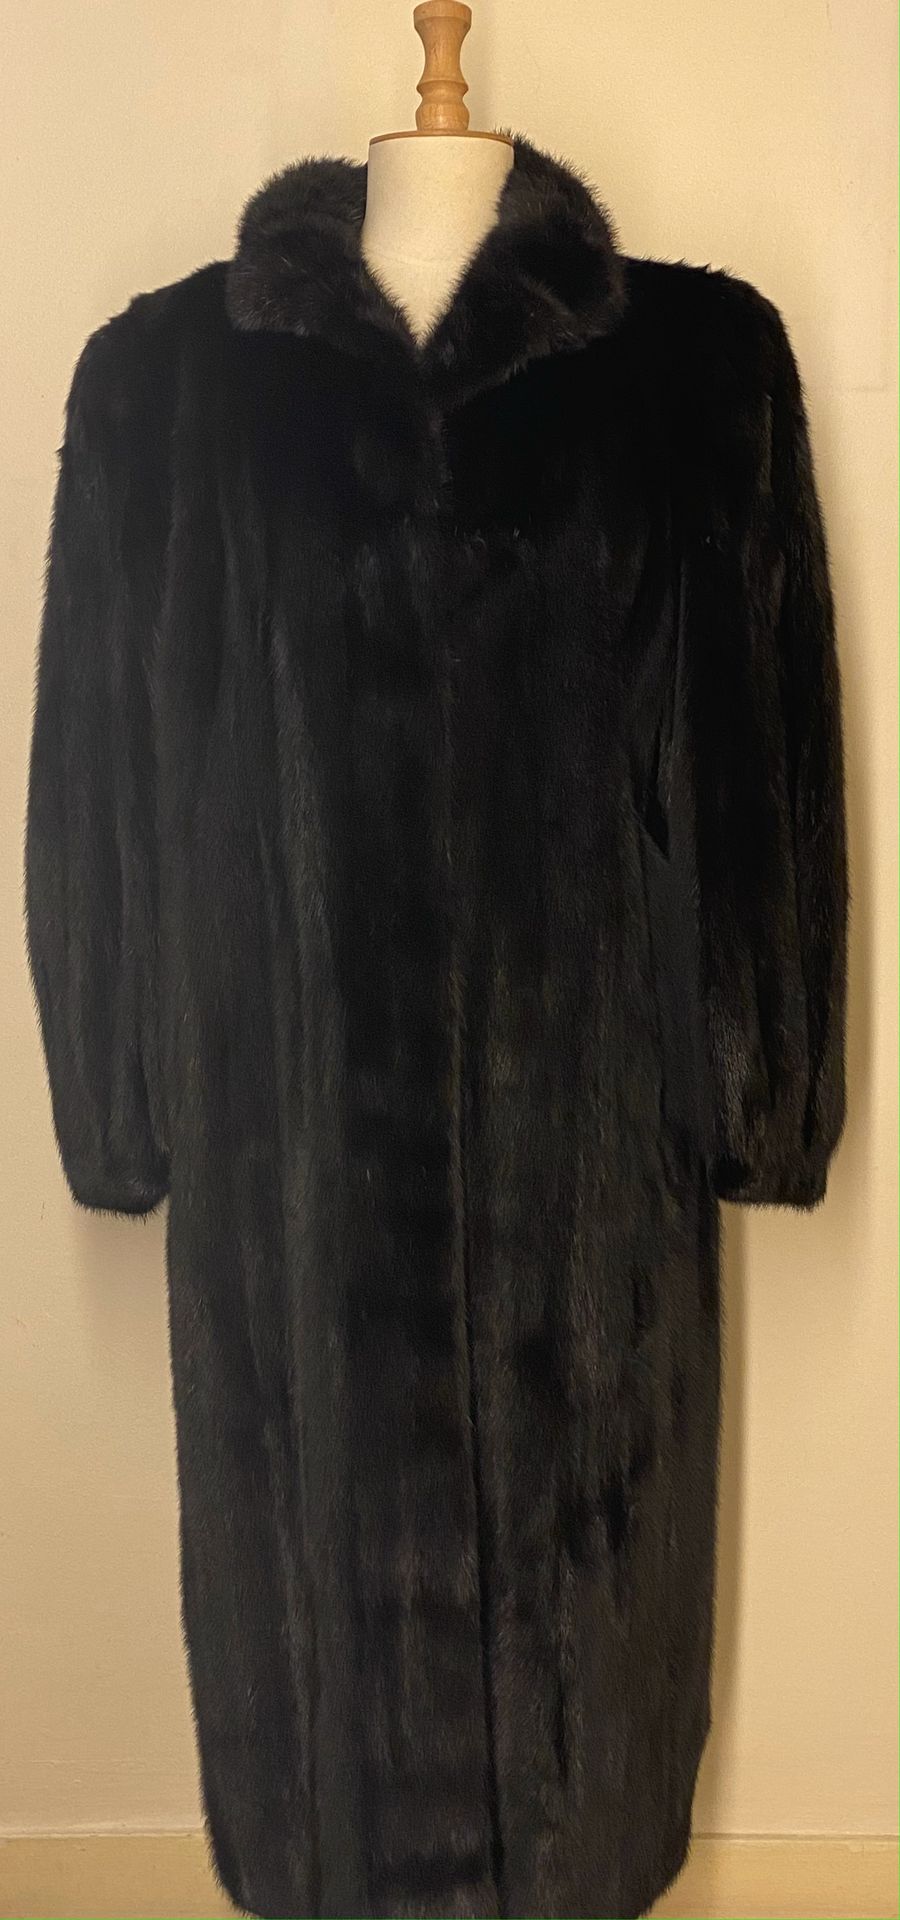 Null GIL Fourrures à NANCY

Long manteau en vison dark - Taille 38/40 



Le ret&hellip;